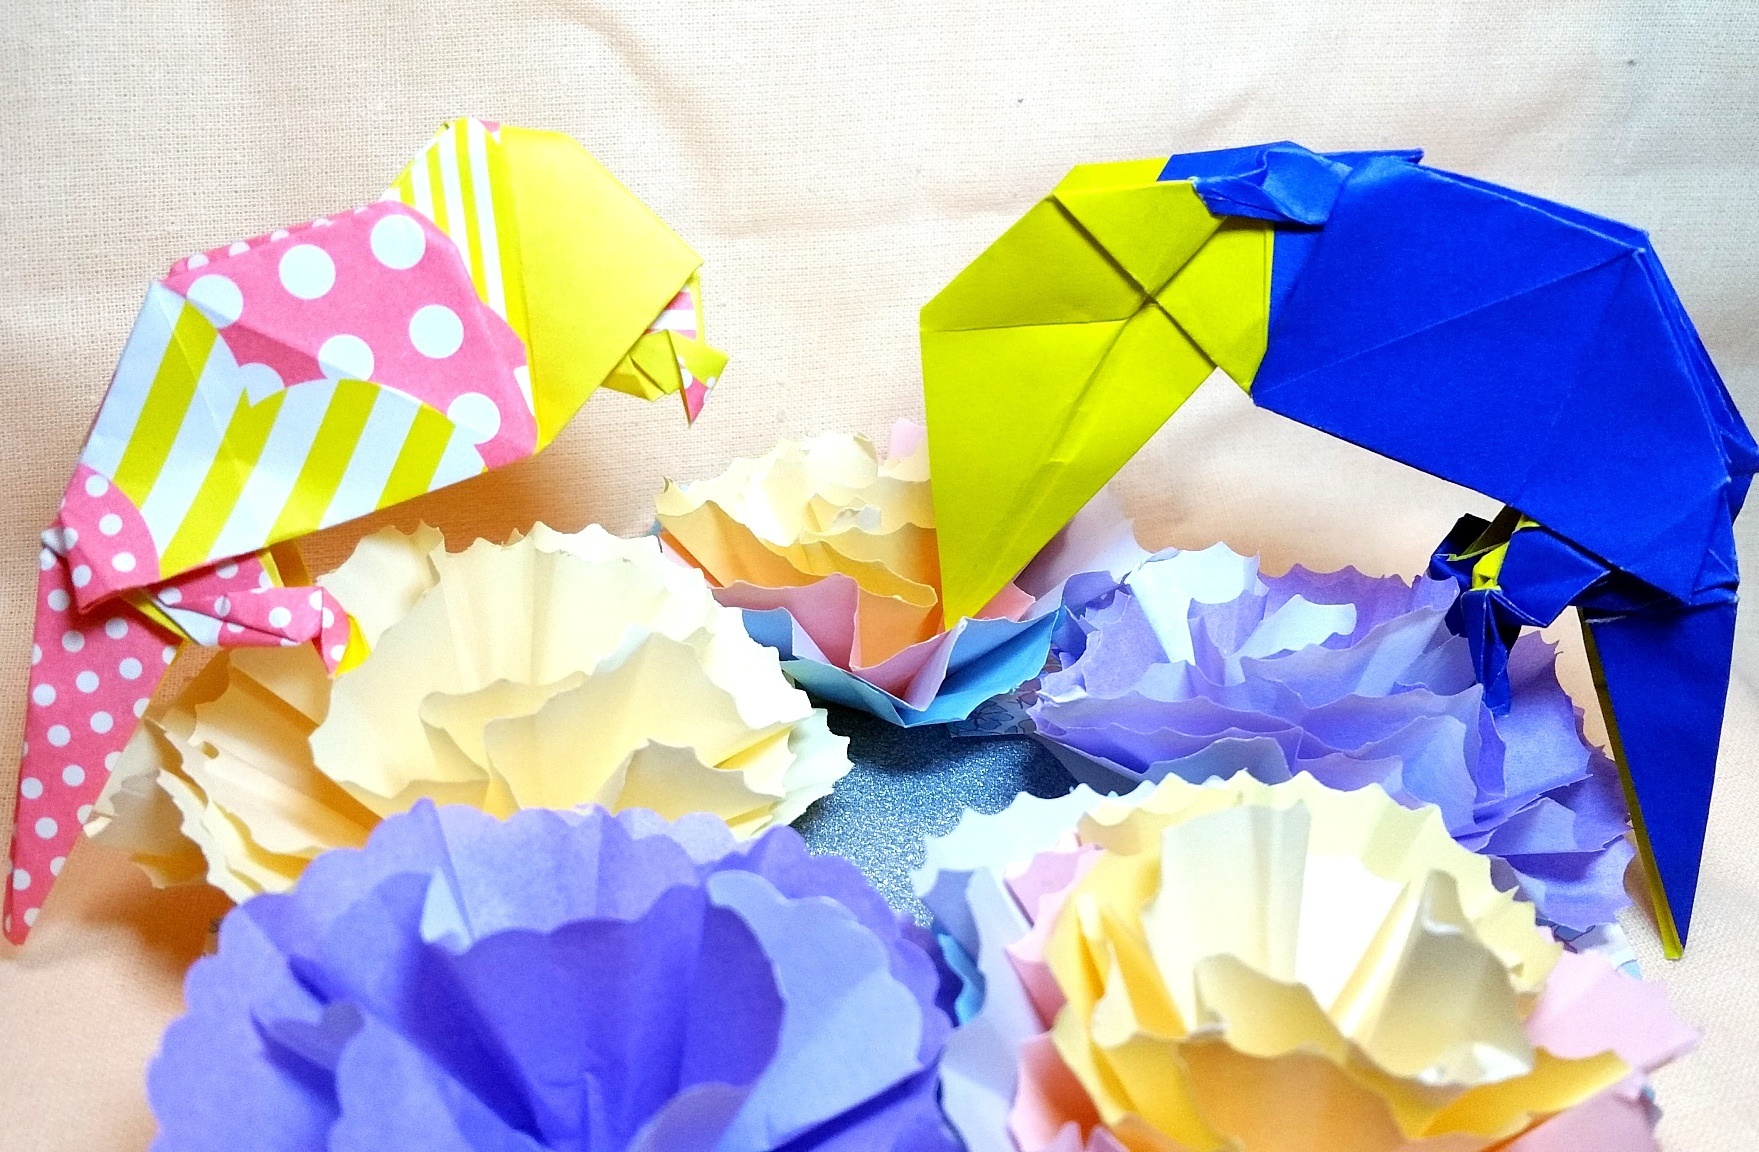 小鳥の作り方 簡単まとめ 折り紙 画用紙 平面 立体 インコ オウム 鳩など ぽぴあコレクション